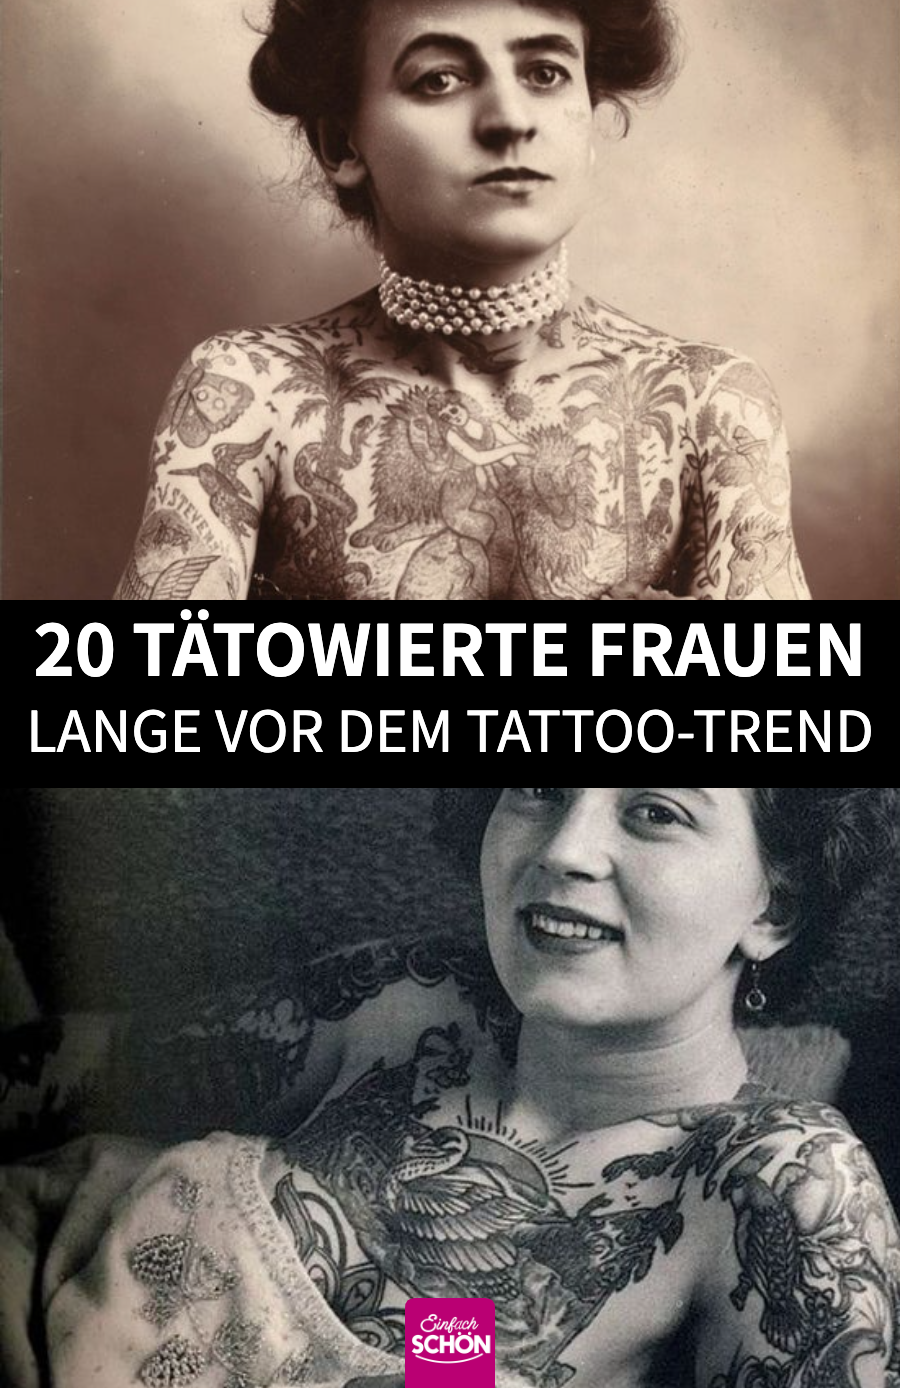 Tattooed Ladies: 19 alte Bilder von Frauen mit Tattoos